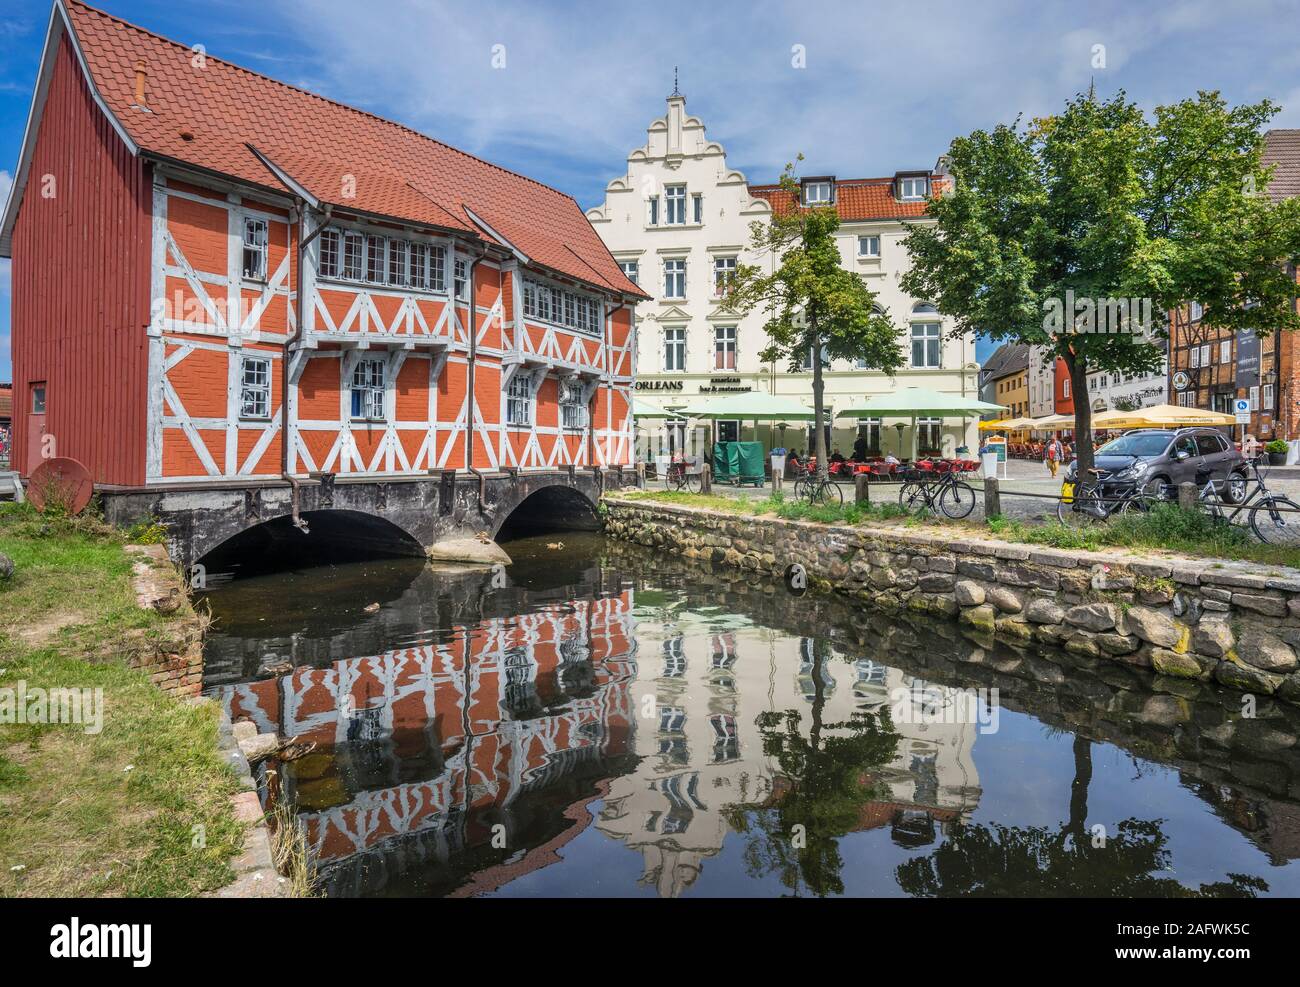 Gewölbe, également connu sous le nom de la maison rouge est une maison à colombages construite de l'autre côté de la rivière Grube sur le vieux port de la ville hanséatique de Wismar Banque D'Images